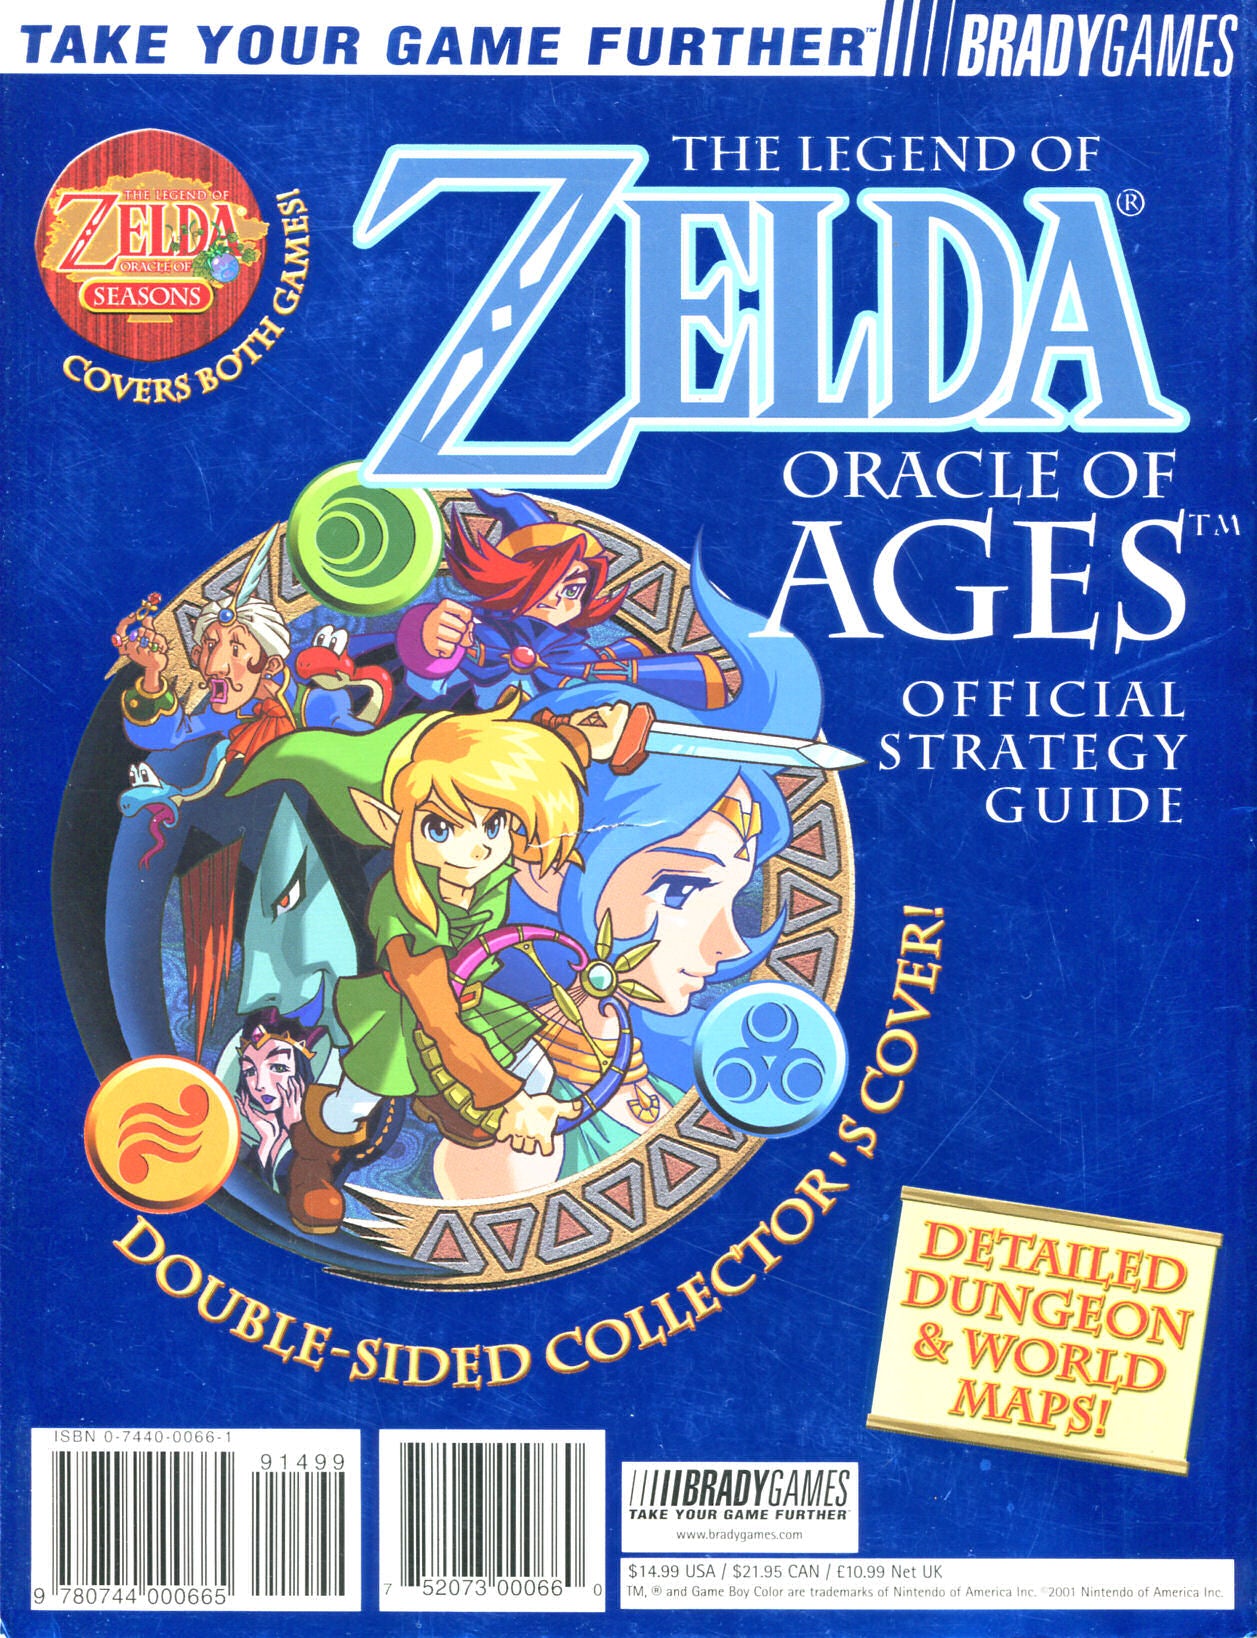 Zelda (Game & Watch) – J2Games